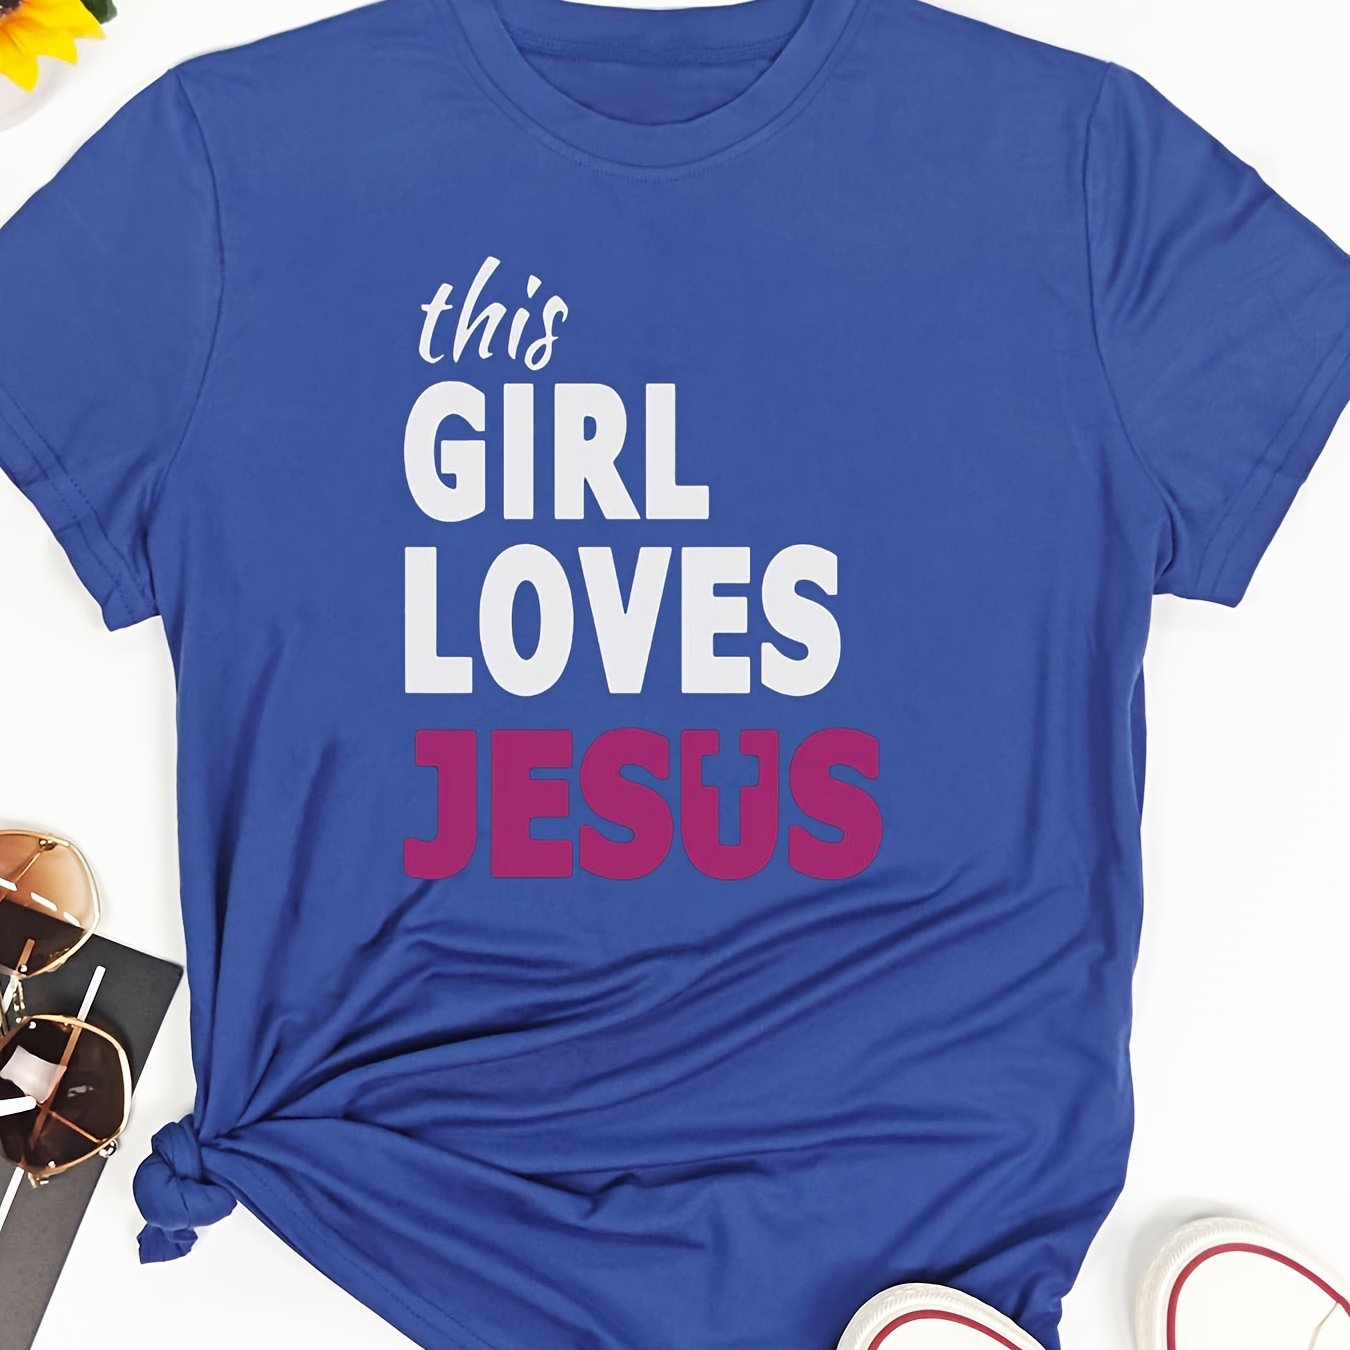 This Girl Loves Jesus Women's Christian T-shirt claimedbygoddesigns